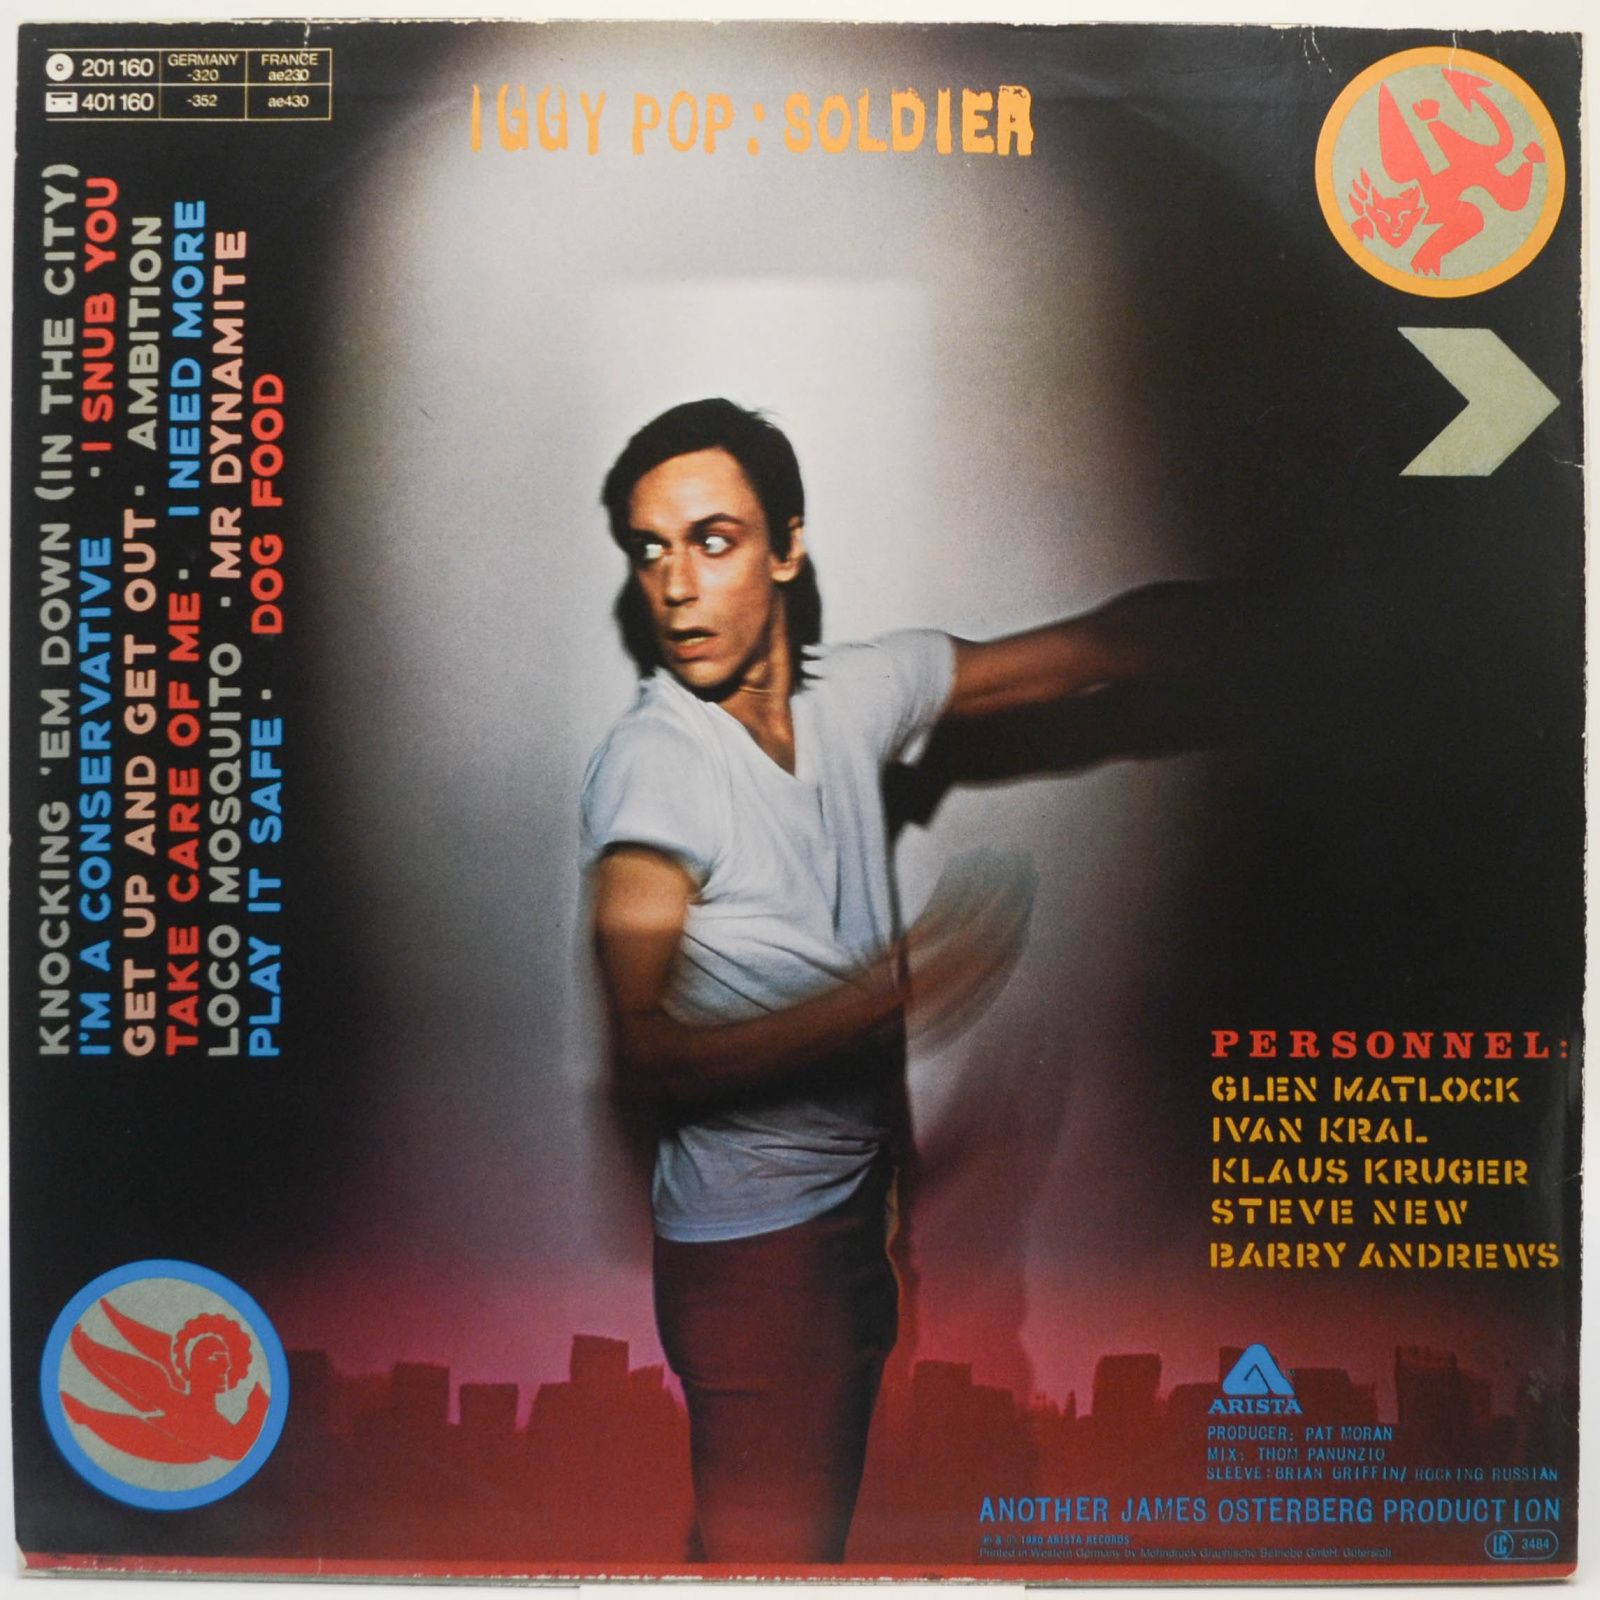 Iggy Pop — Soldier, 1980